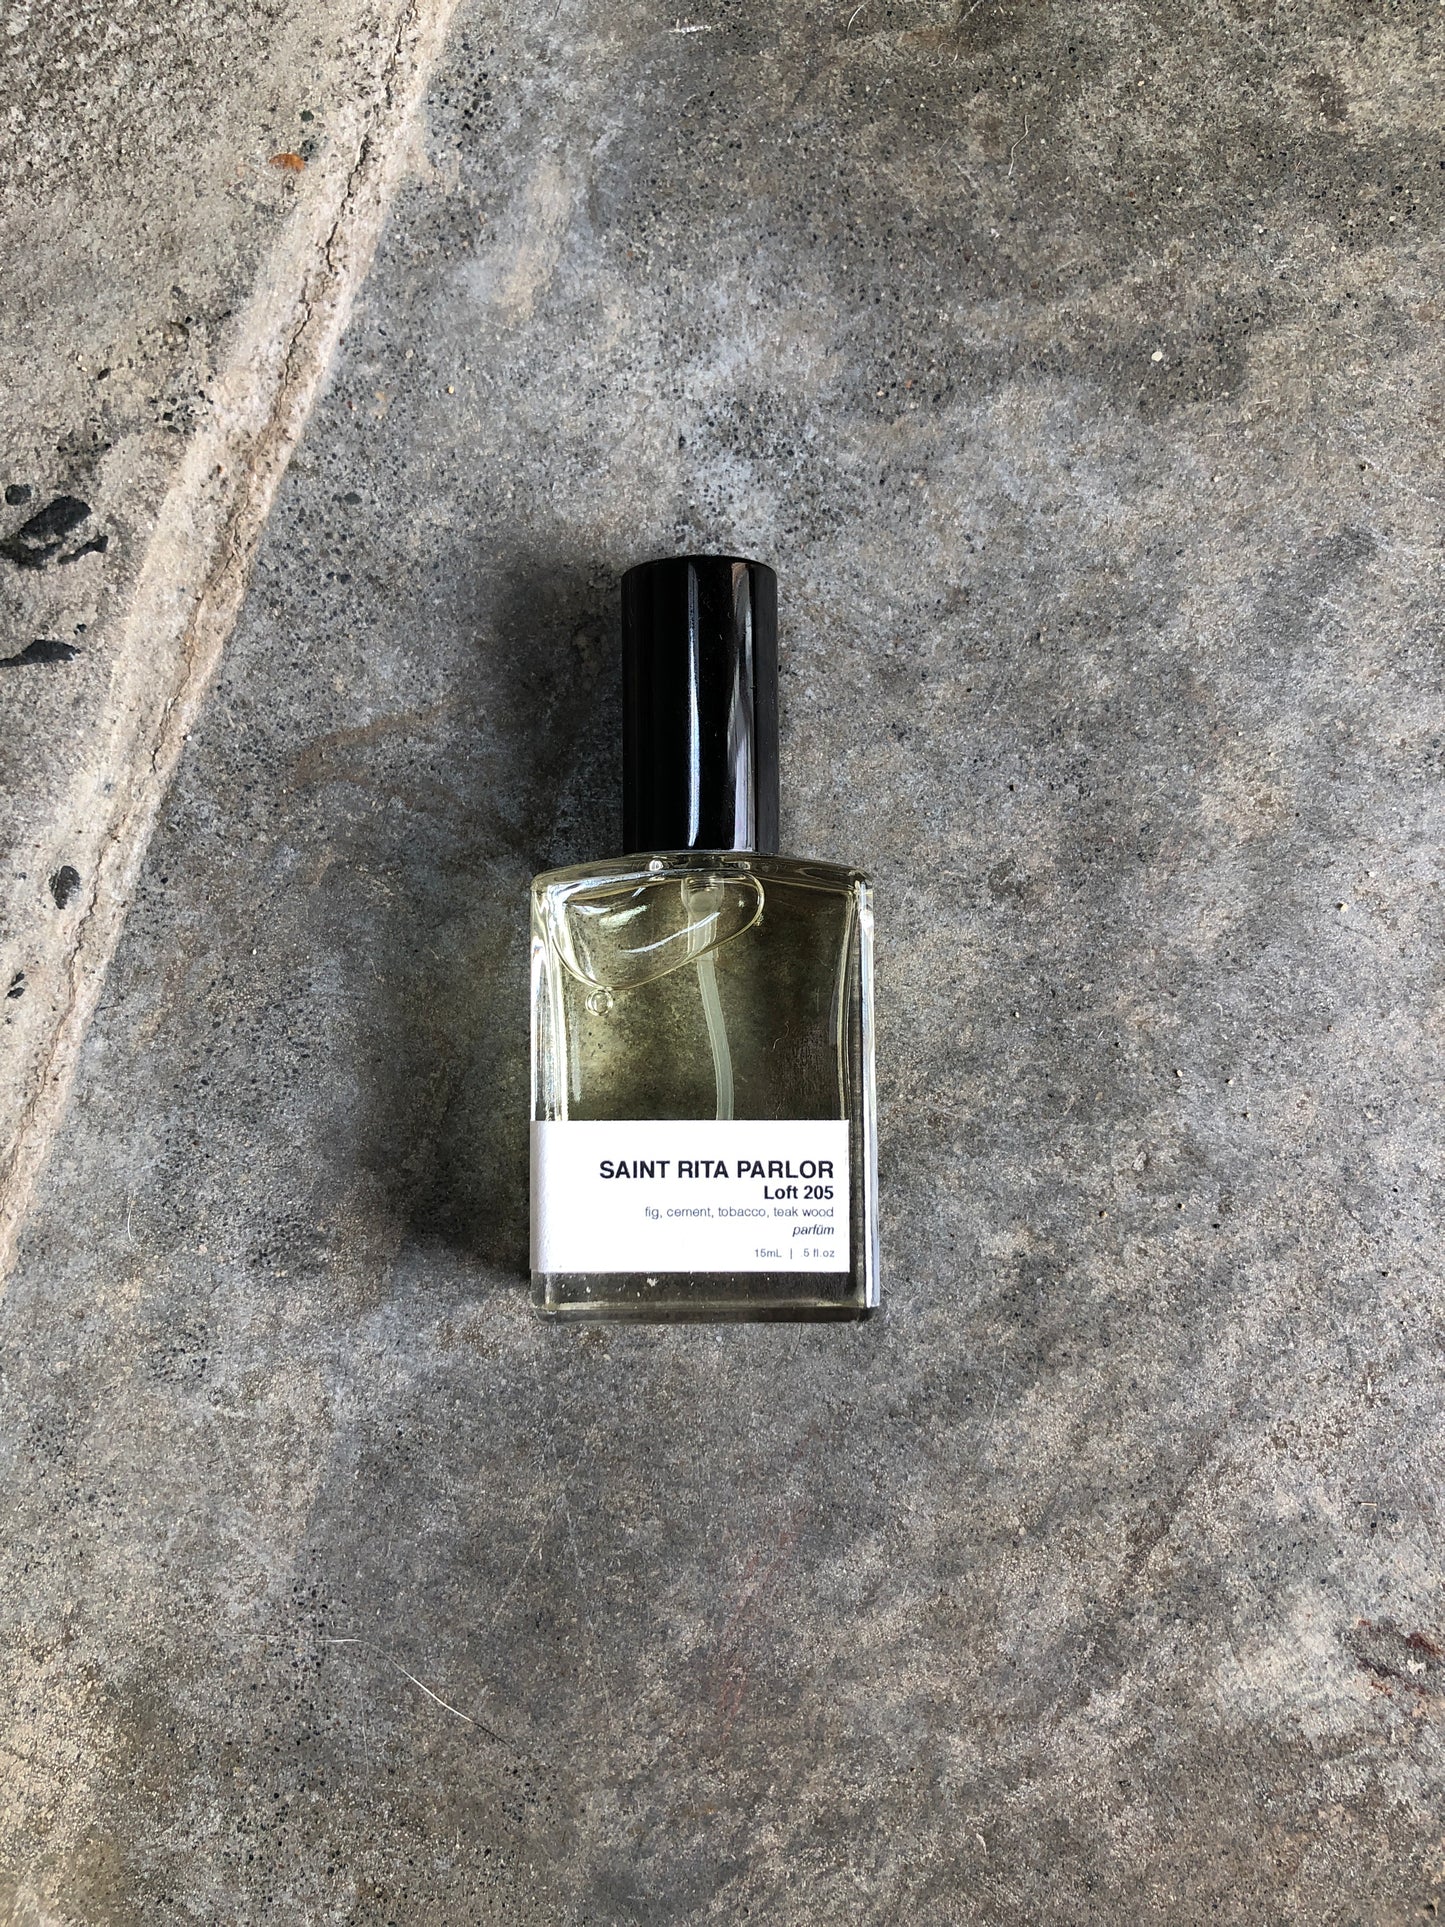 Saint Rita Parlor - 15ml in all three fragrances